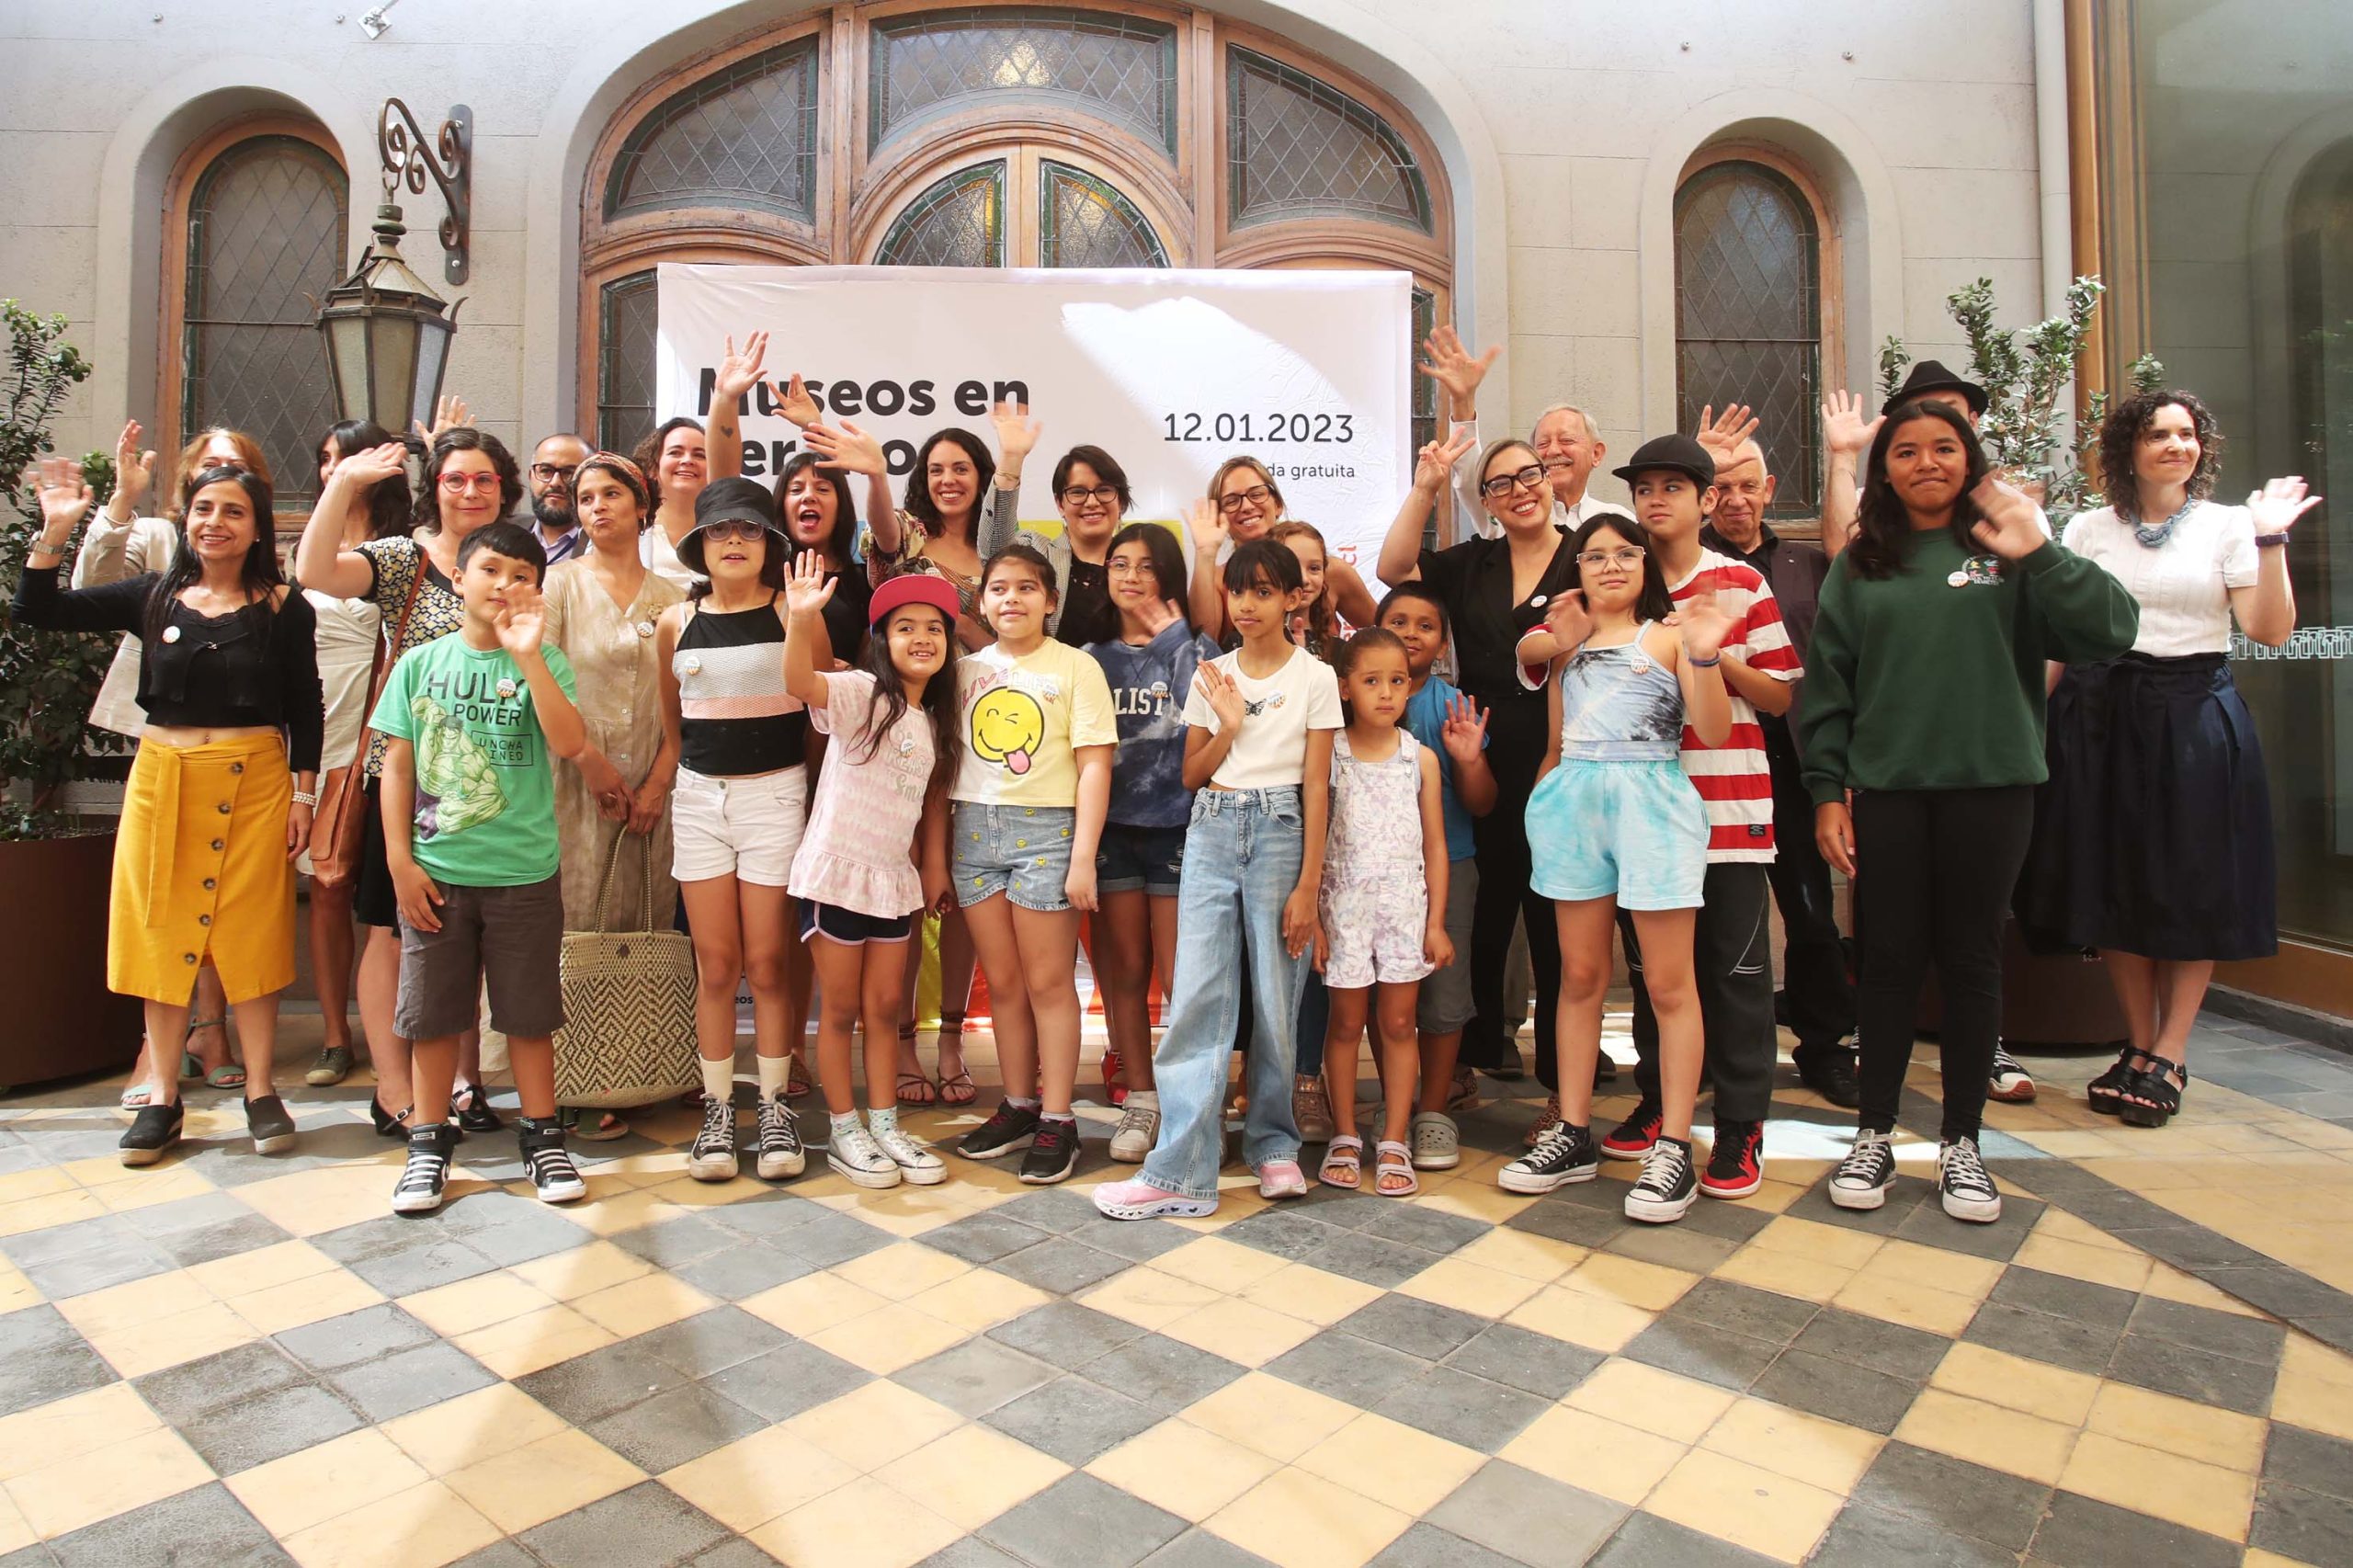 Museos en Verano: Más de 150 espacios culturales estarán abiertos a la ciudadanía